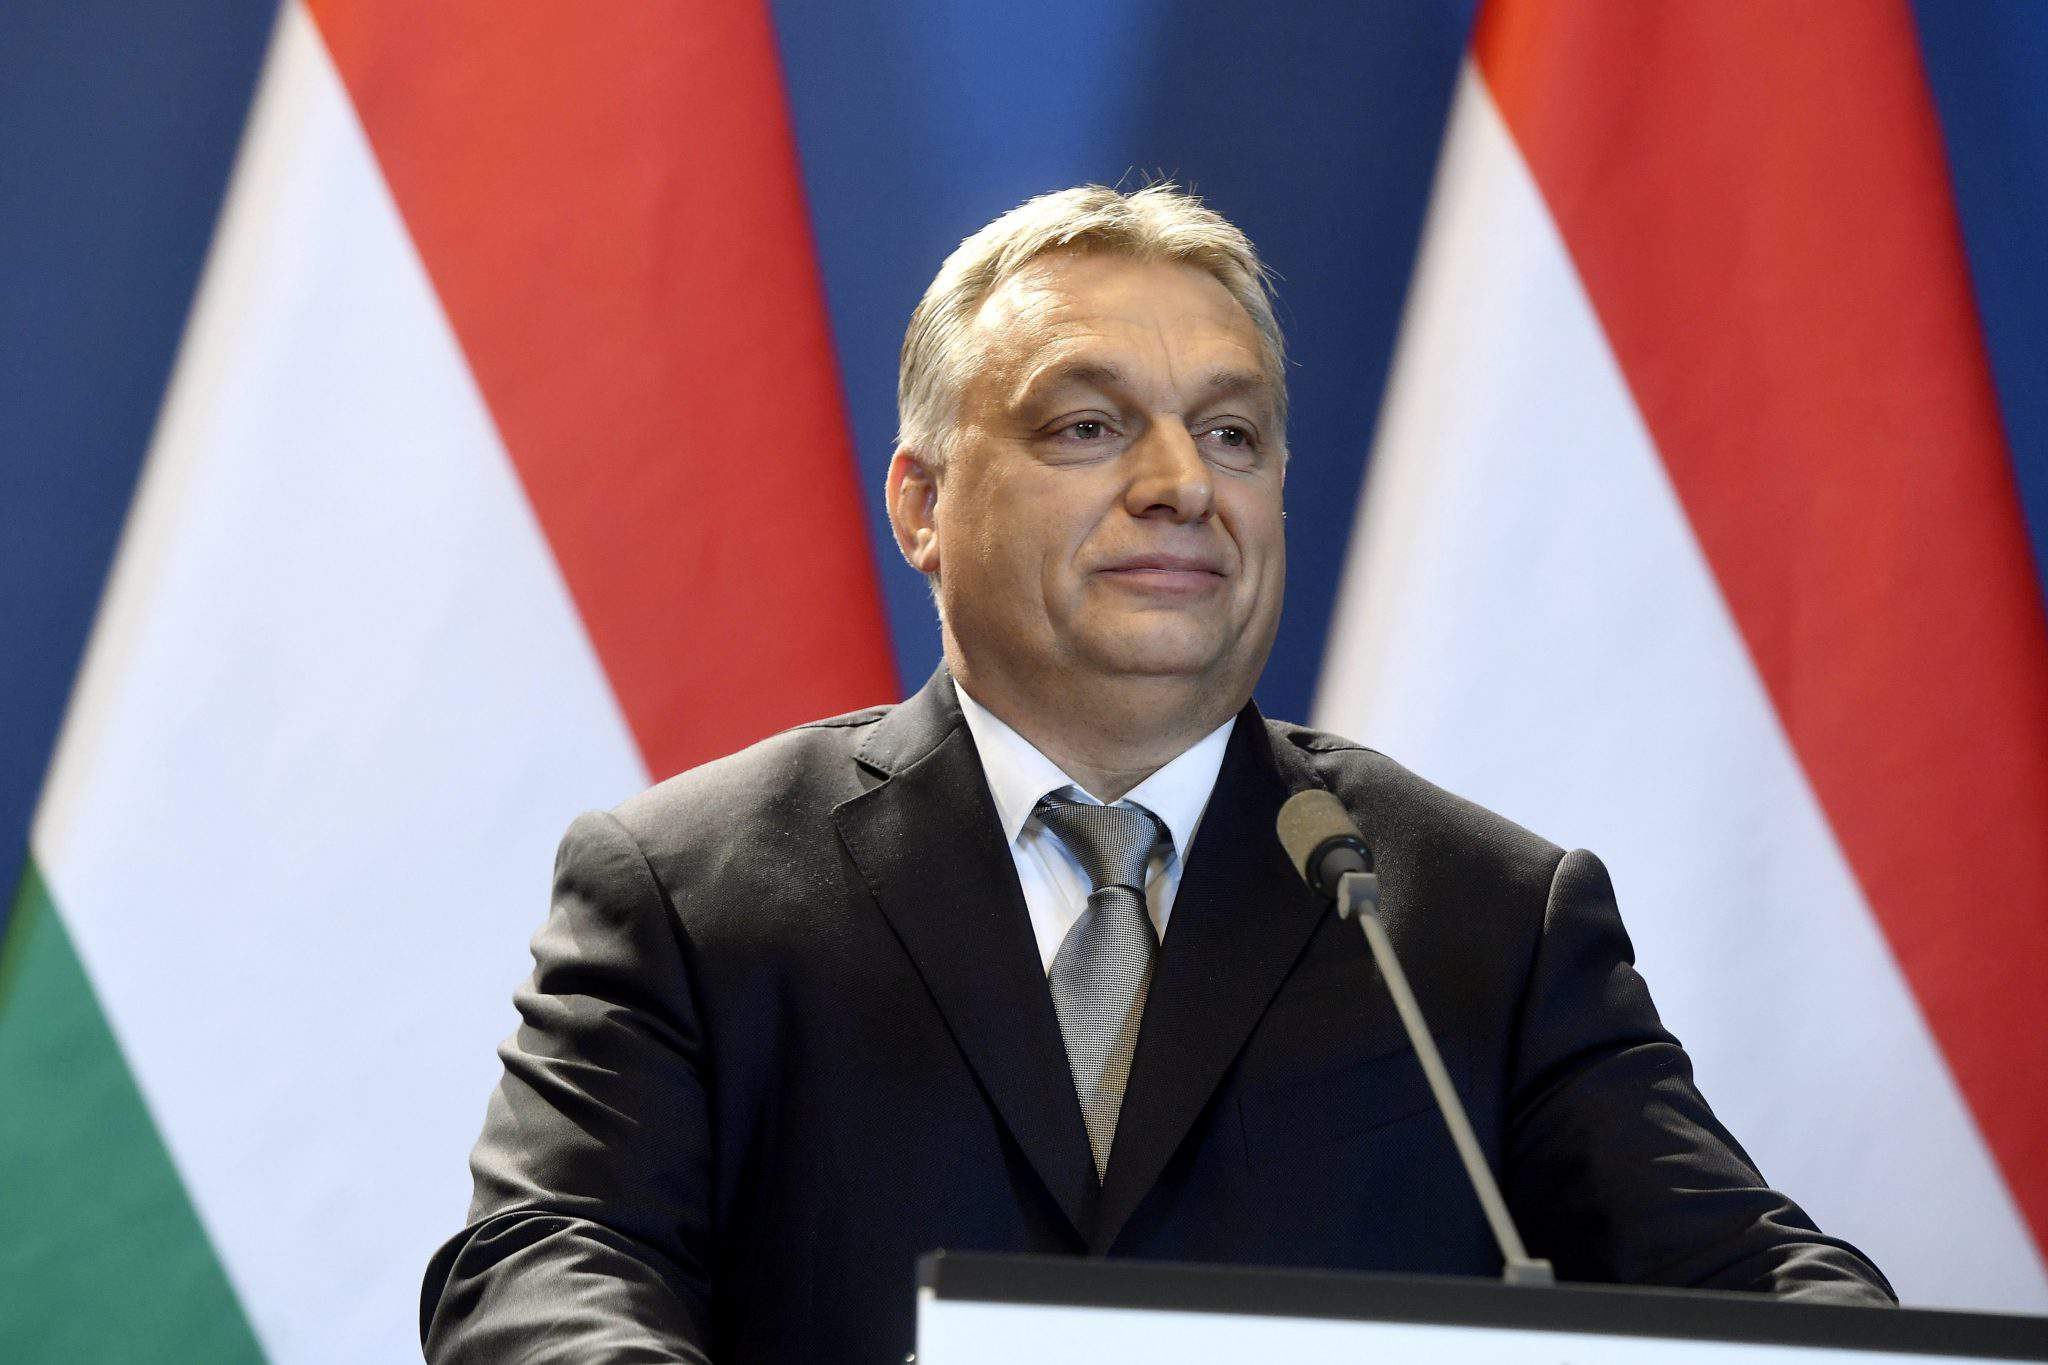 La vittoria di Fidesz potrebbe minacciare la democrazia ungherese